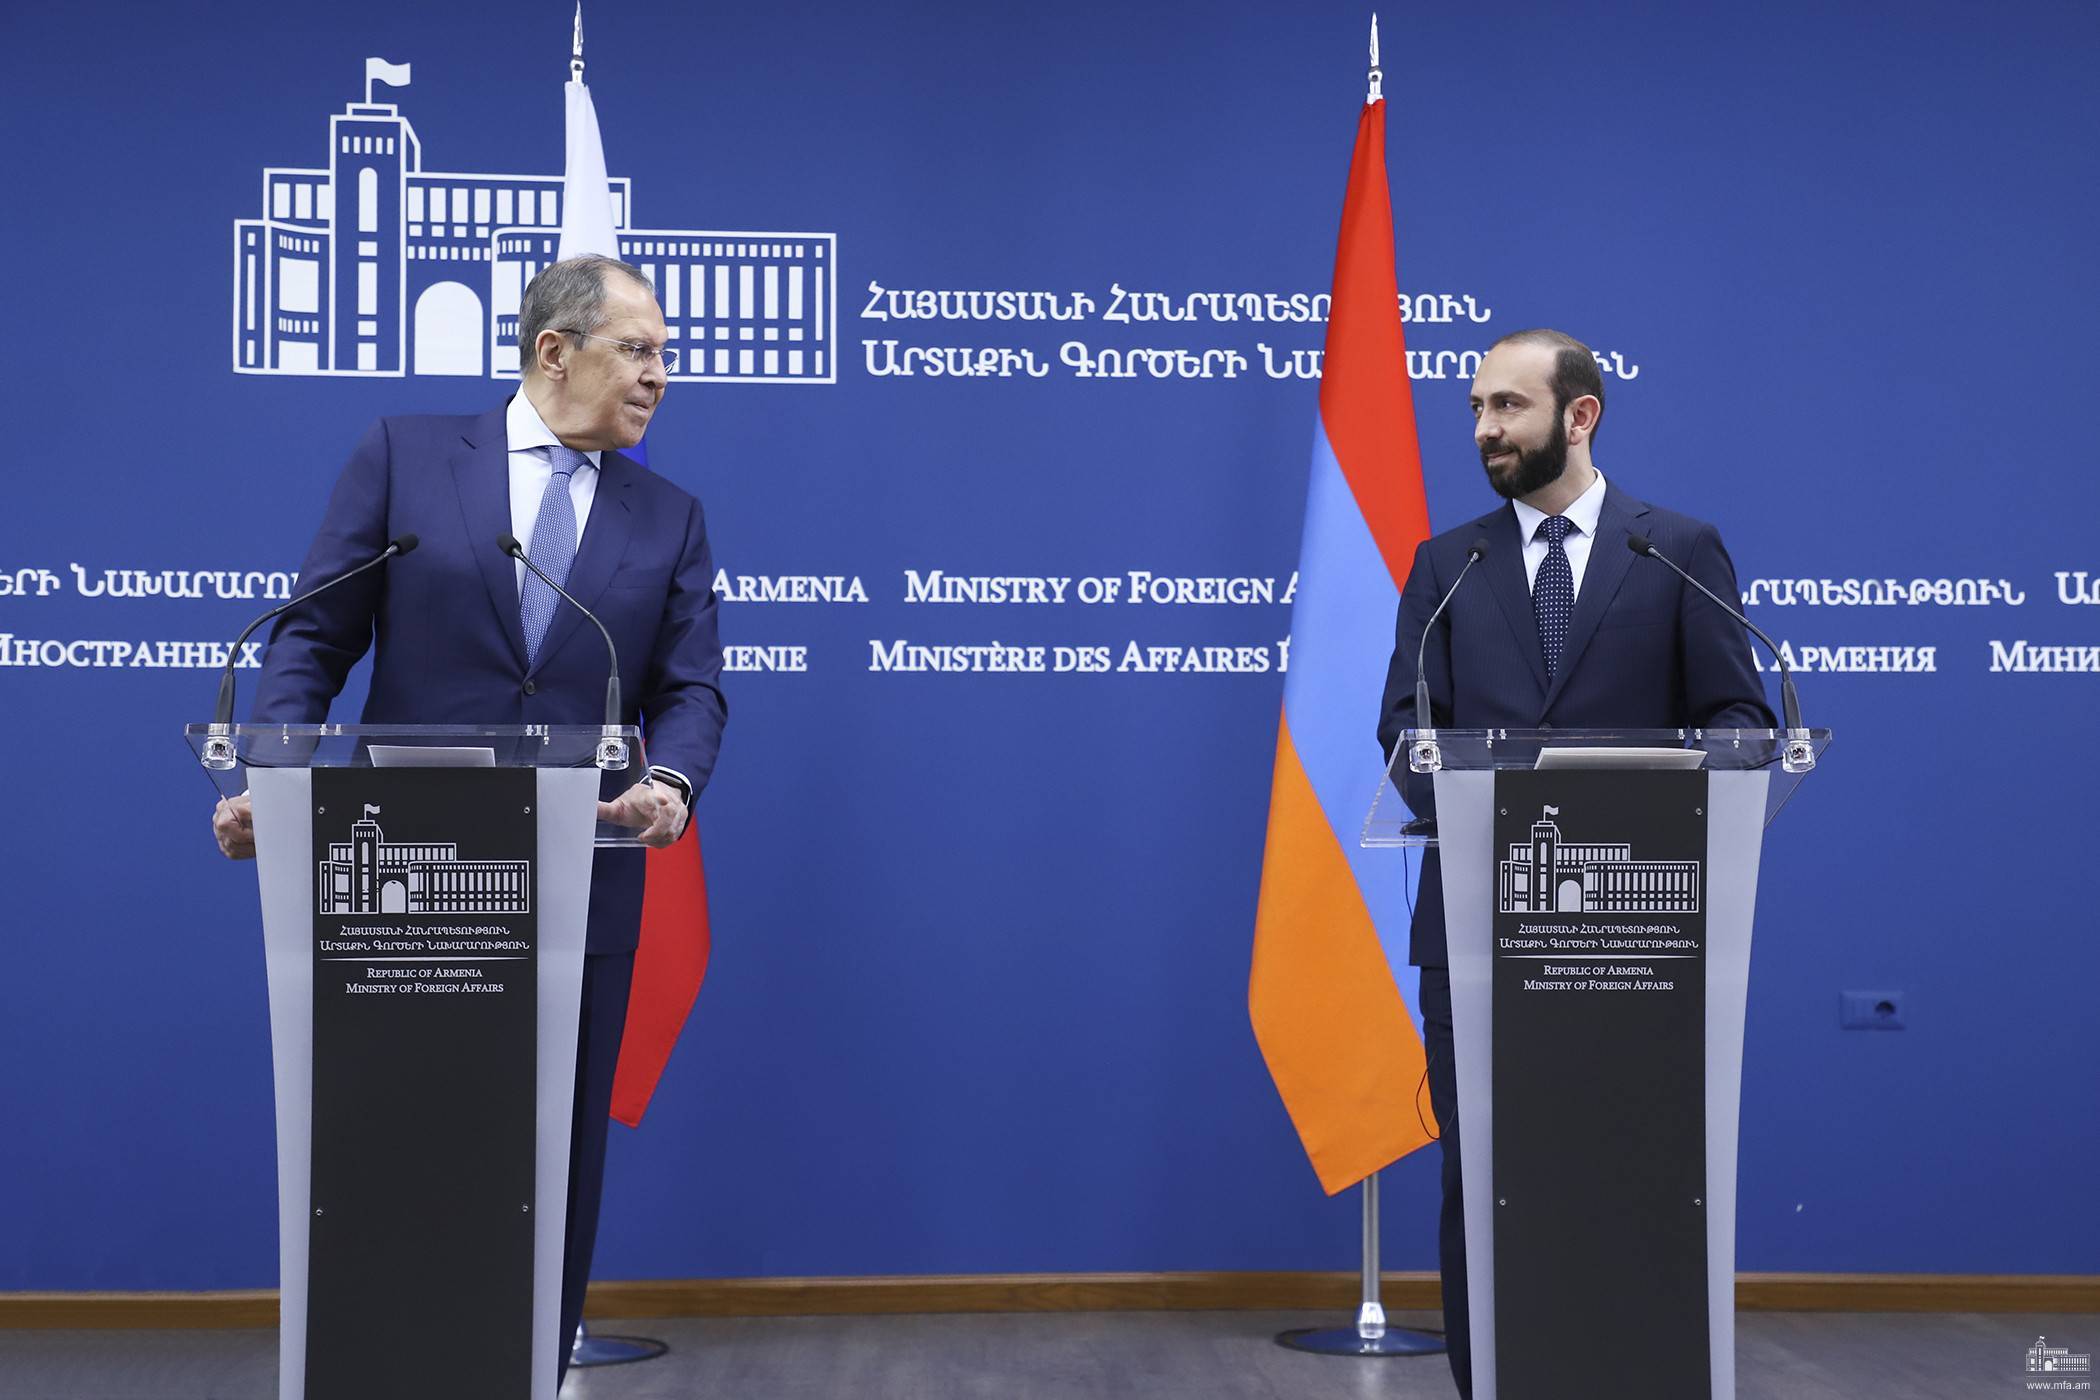 Лавров: РФ готова предоставить картографический материал для делимитации границ между Арменией и Азербайджаном